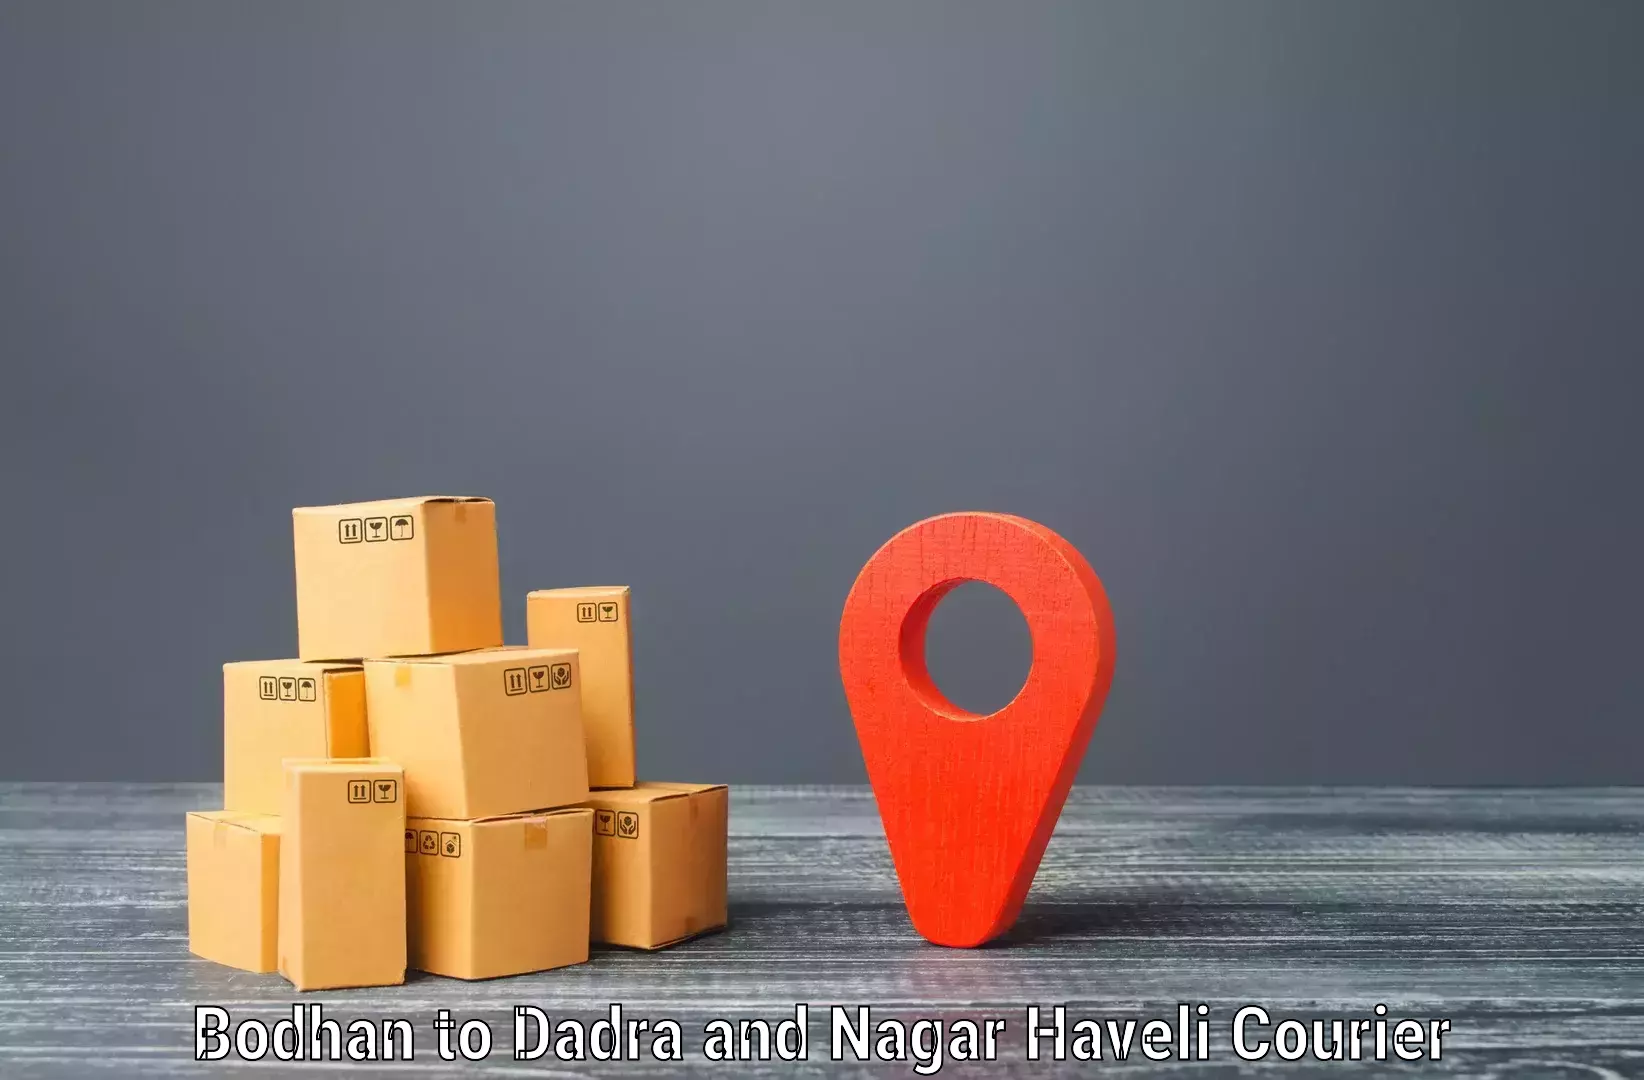 Cross-border shipping Bodhan to Dadra and Nagar Haveli